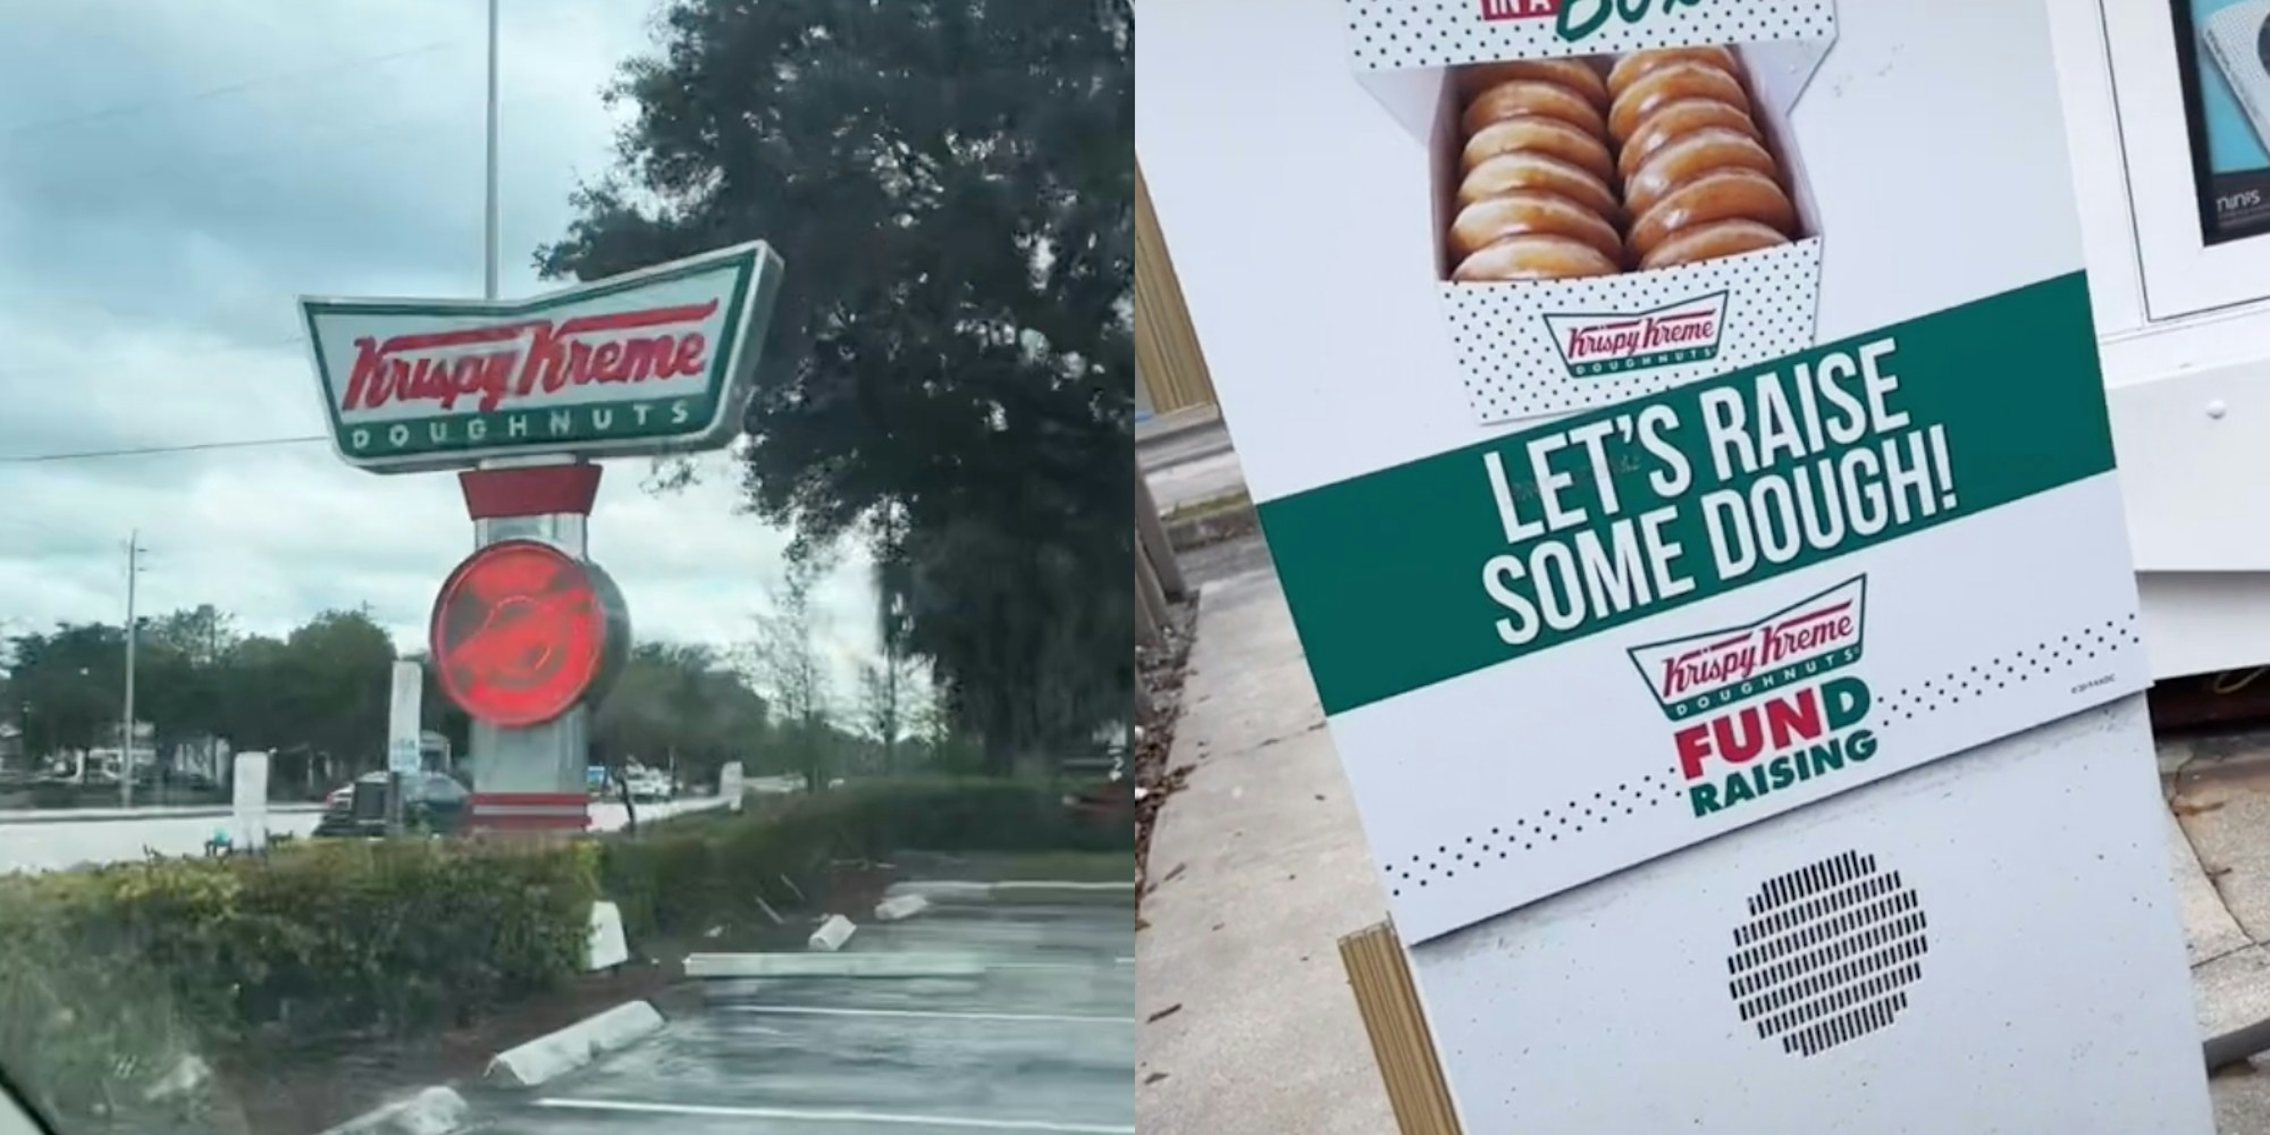 Krispy Kreme 'Hot Light' (L), Krispy Kreme drive-thru (R)